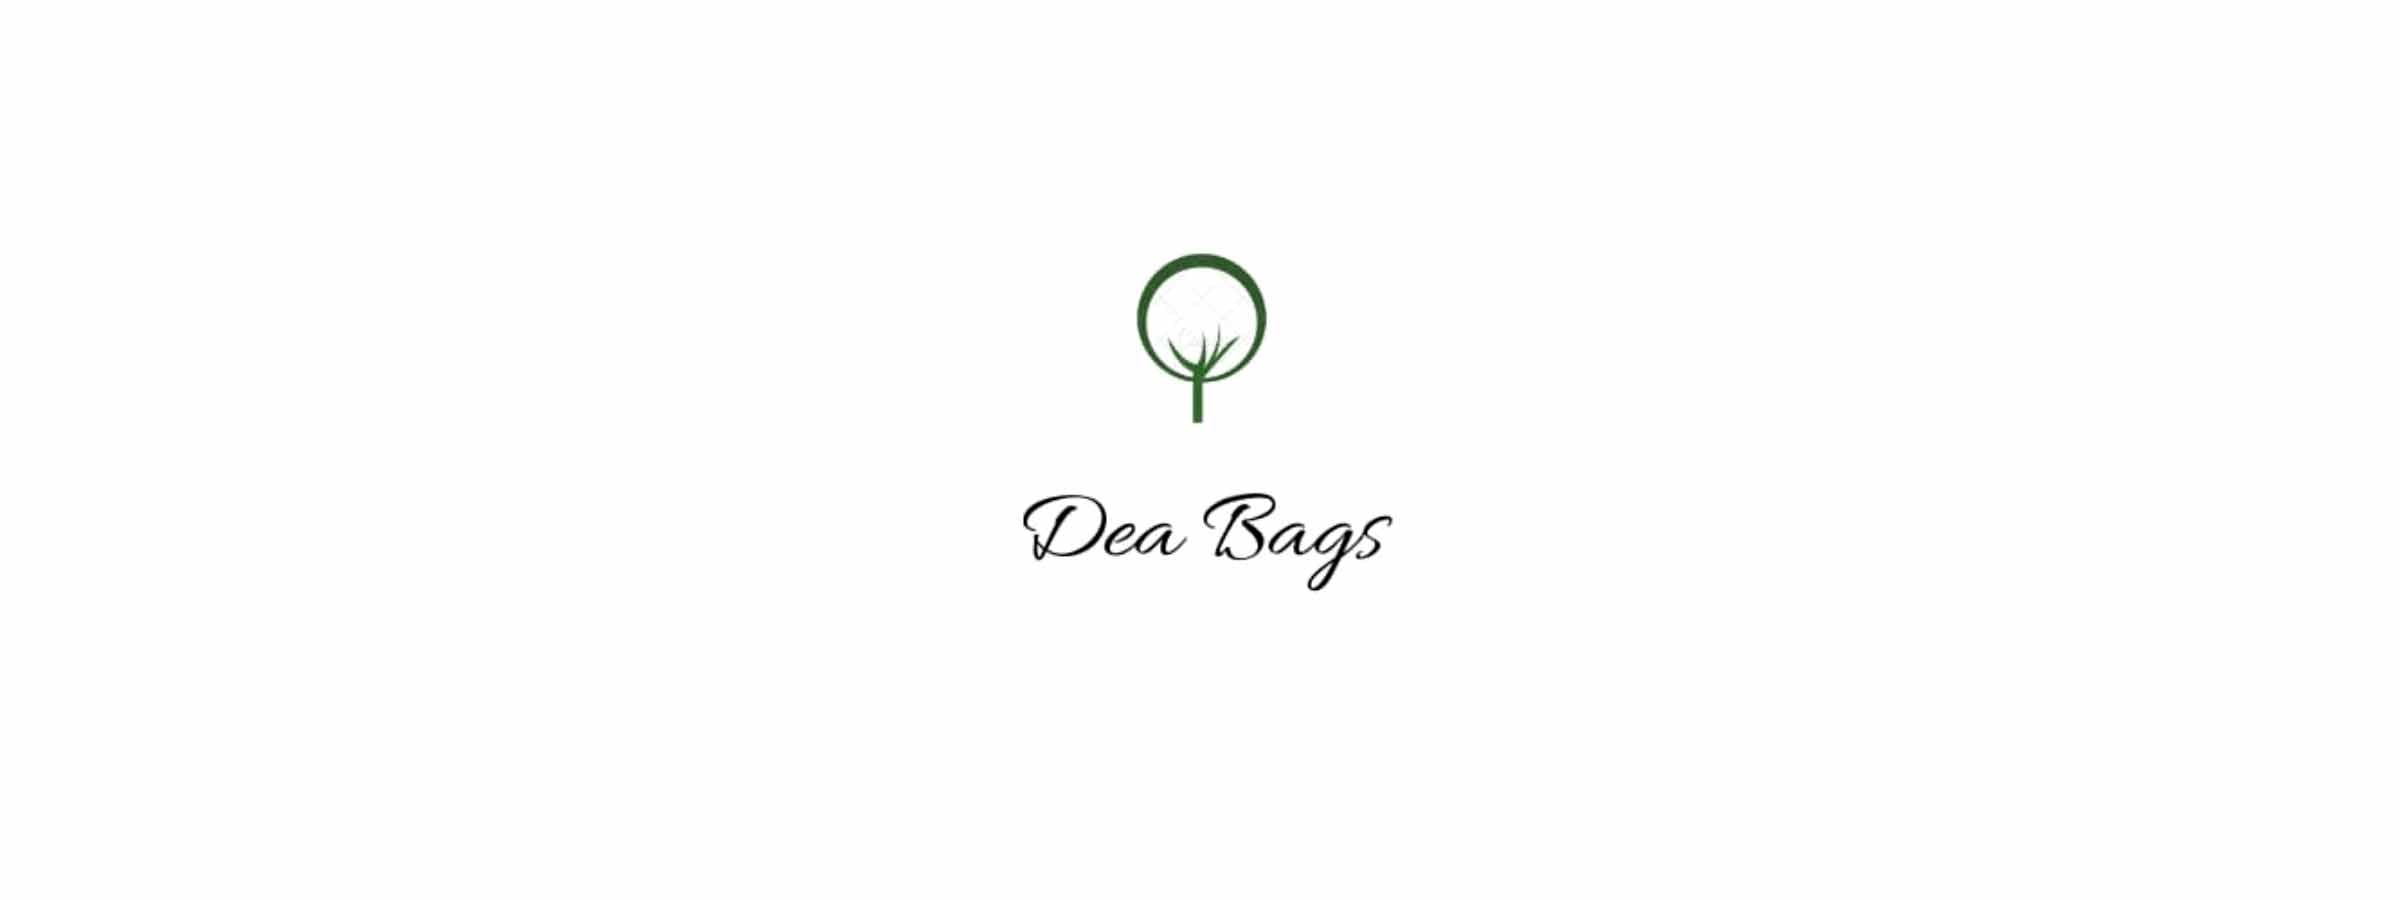 DEA-BAGS - Design Italy